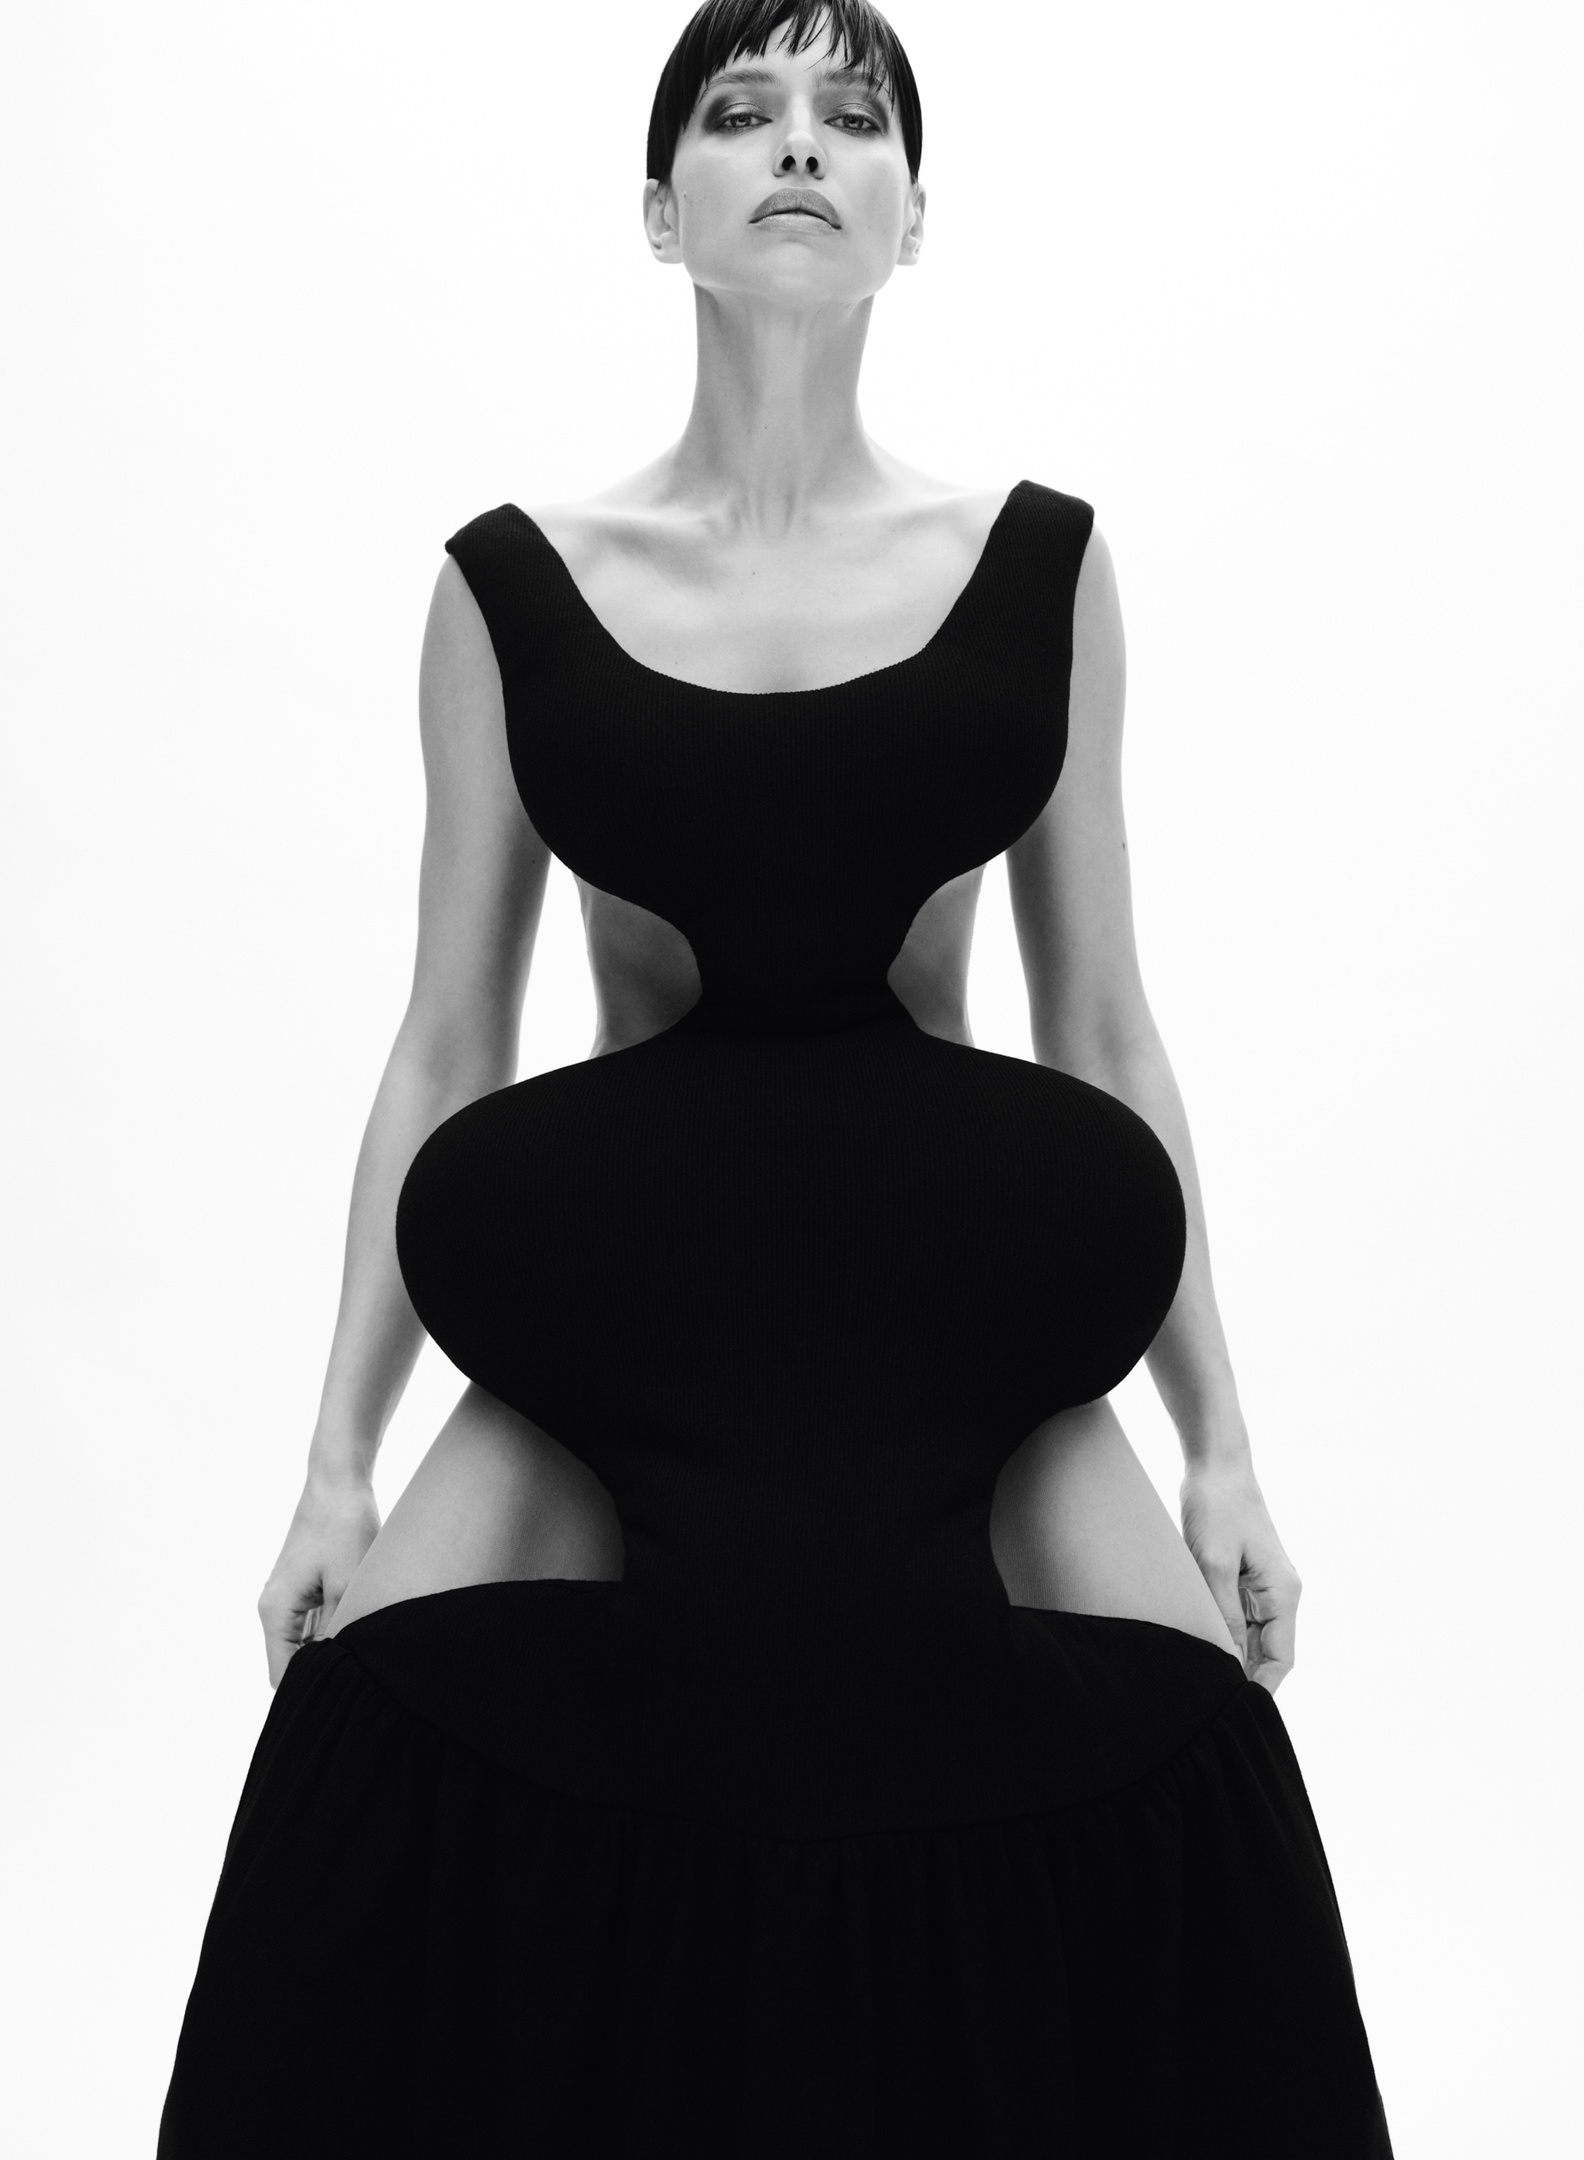 Ирина Шейк появилась на обложке издания V в "остром" платье